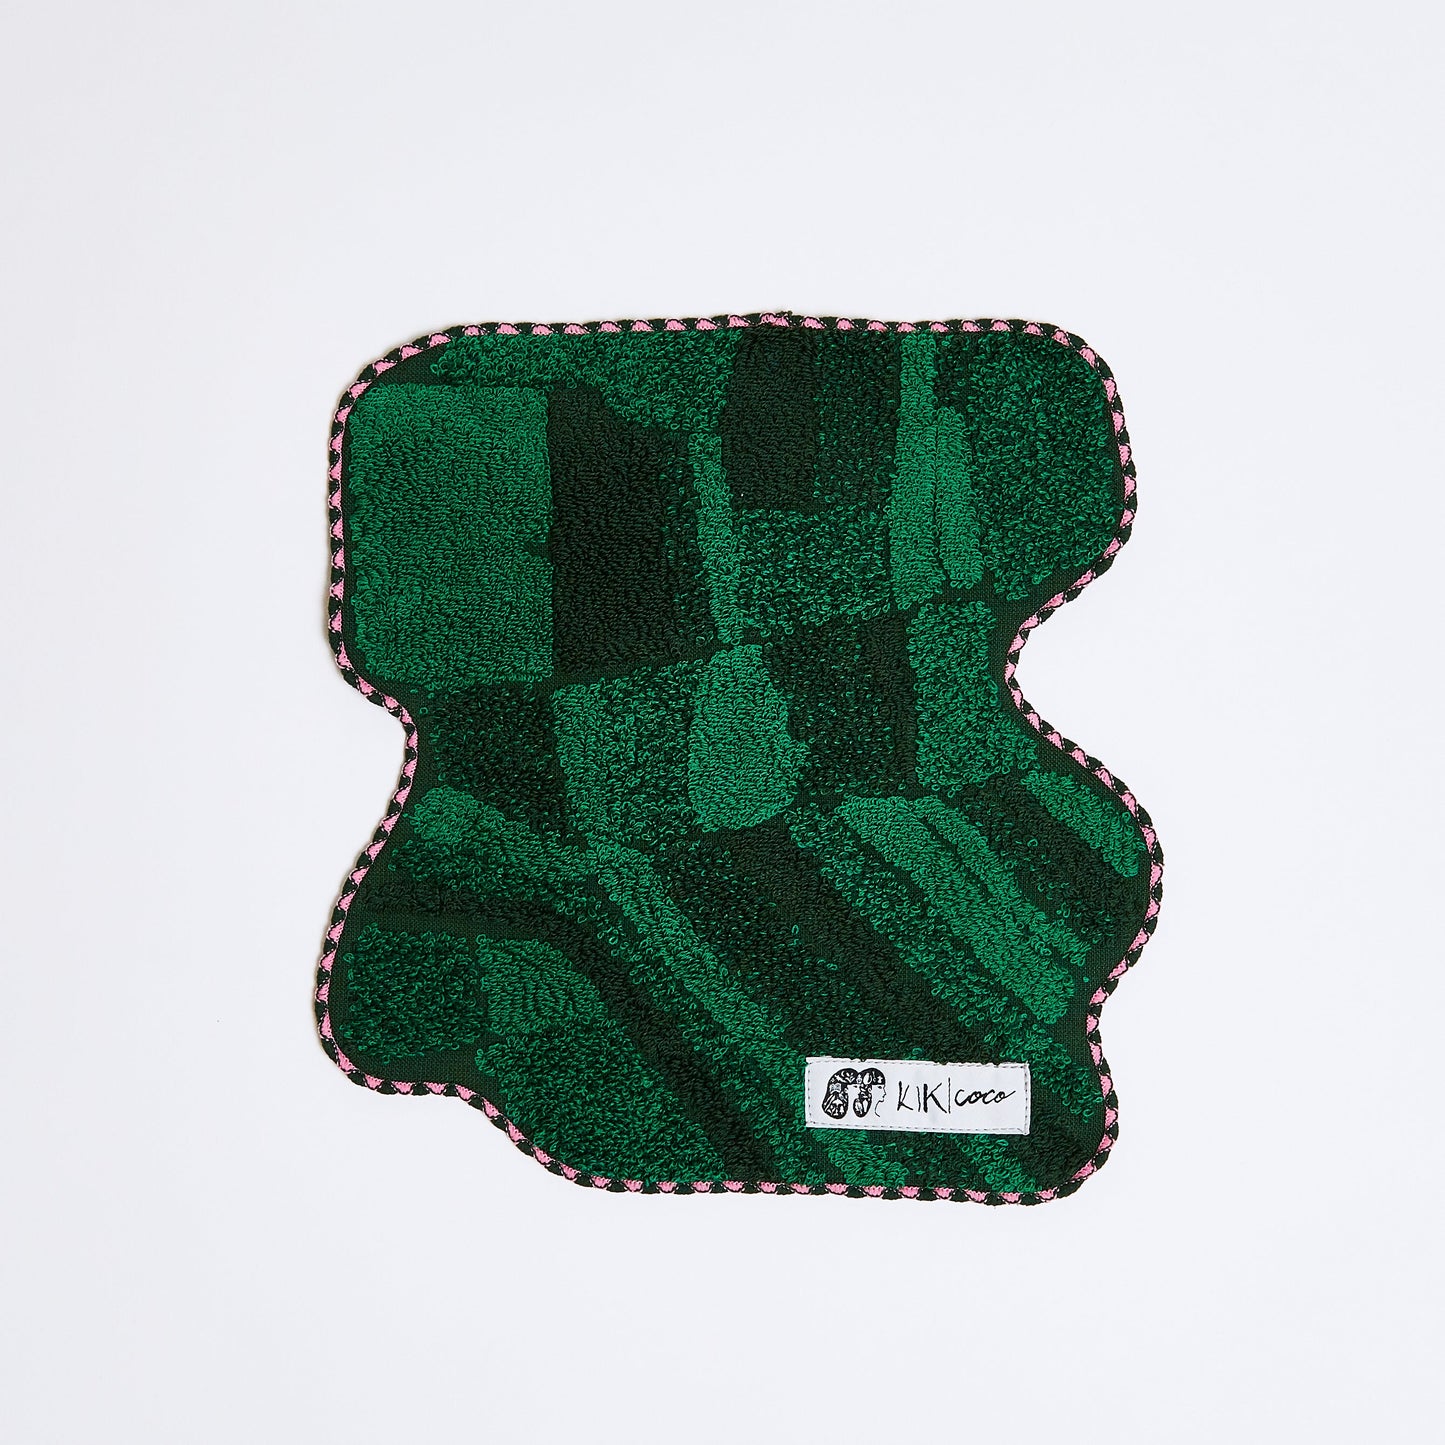 オランダのチューリップ畑をイメージした緑色の変形ハンカチ。